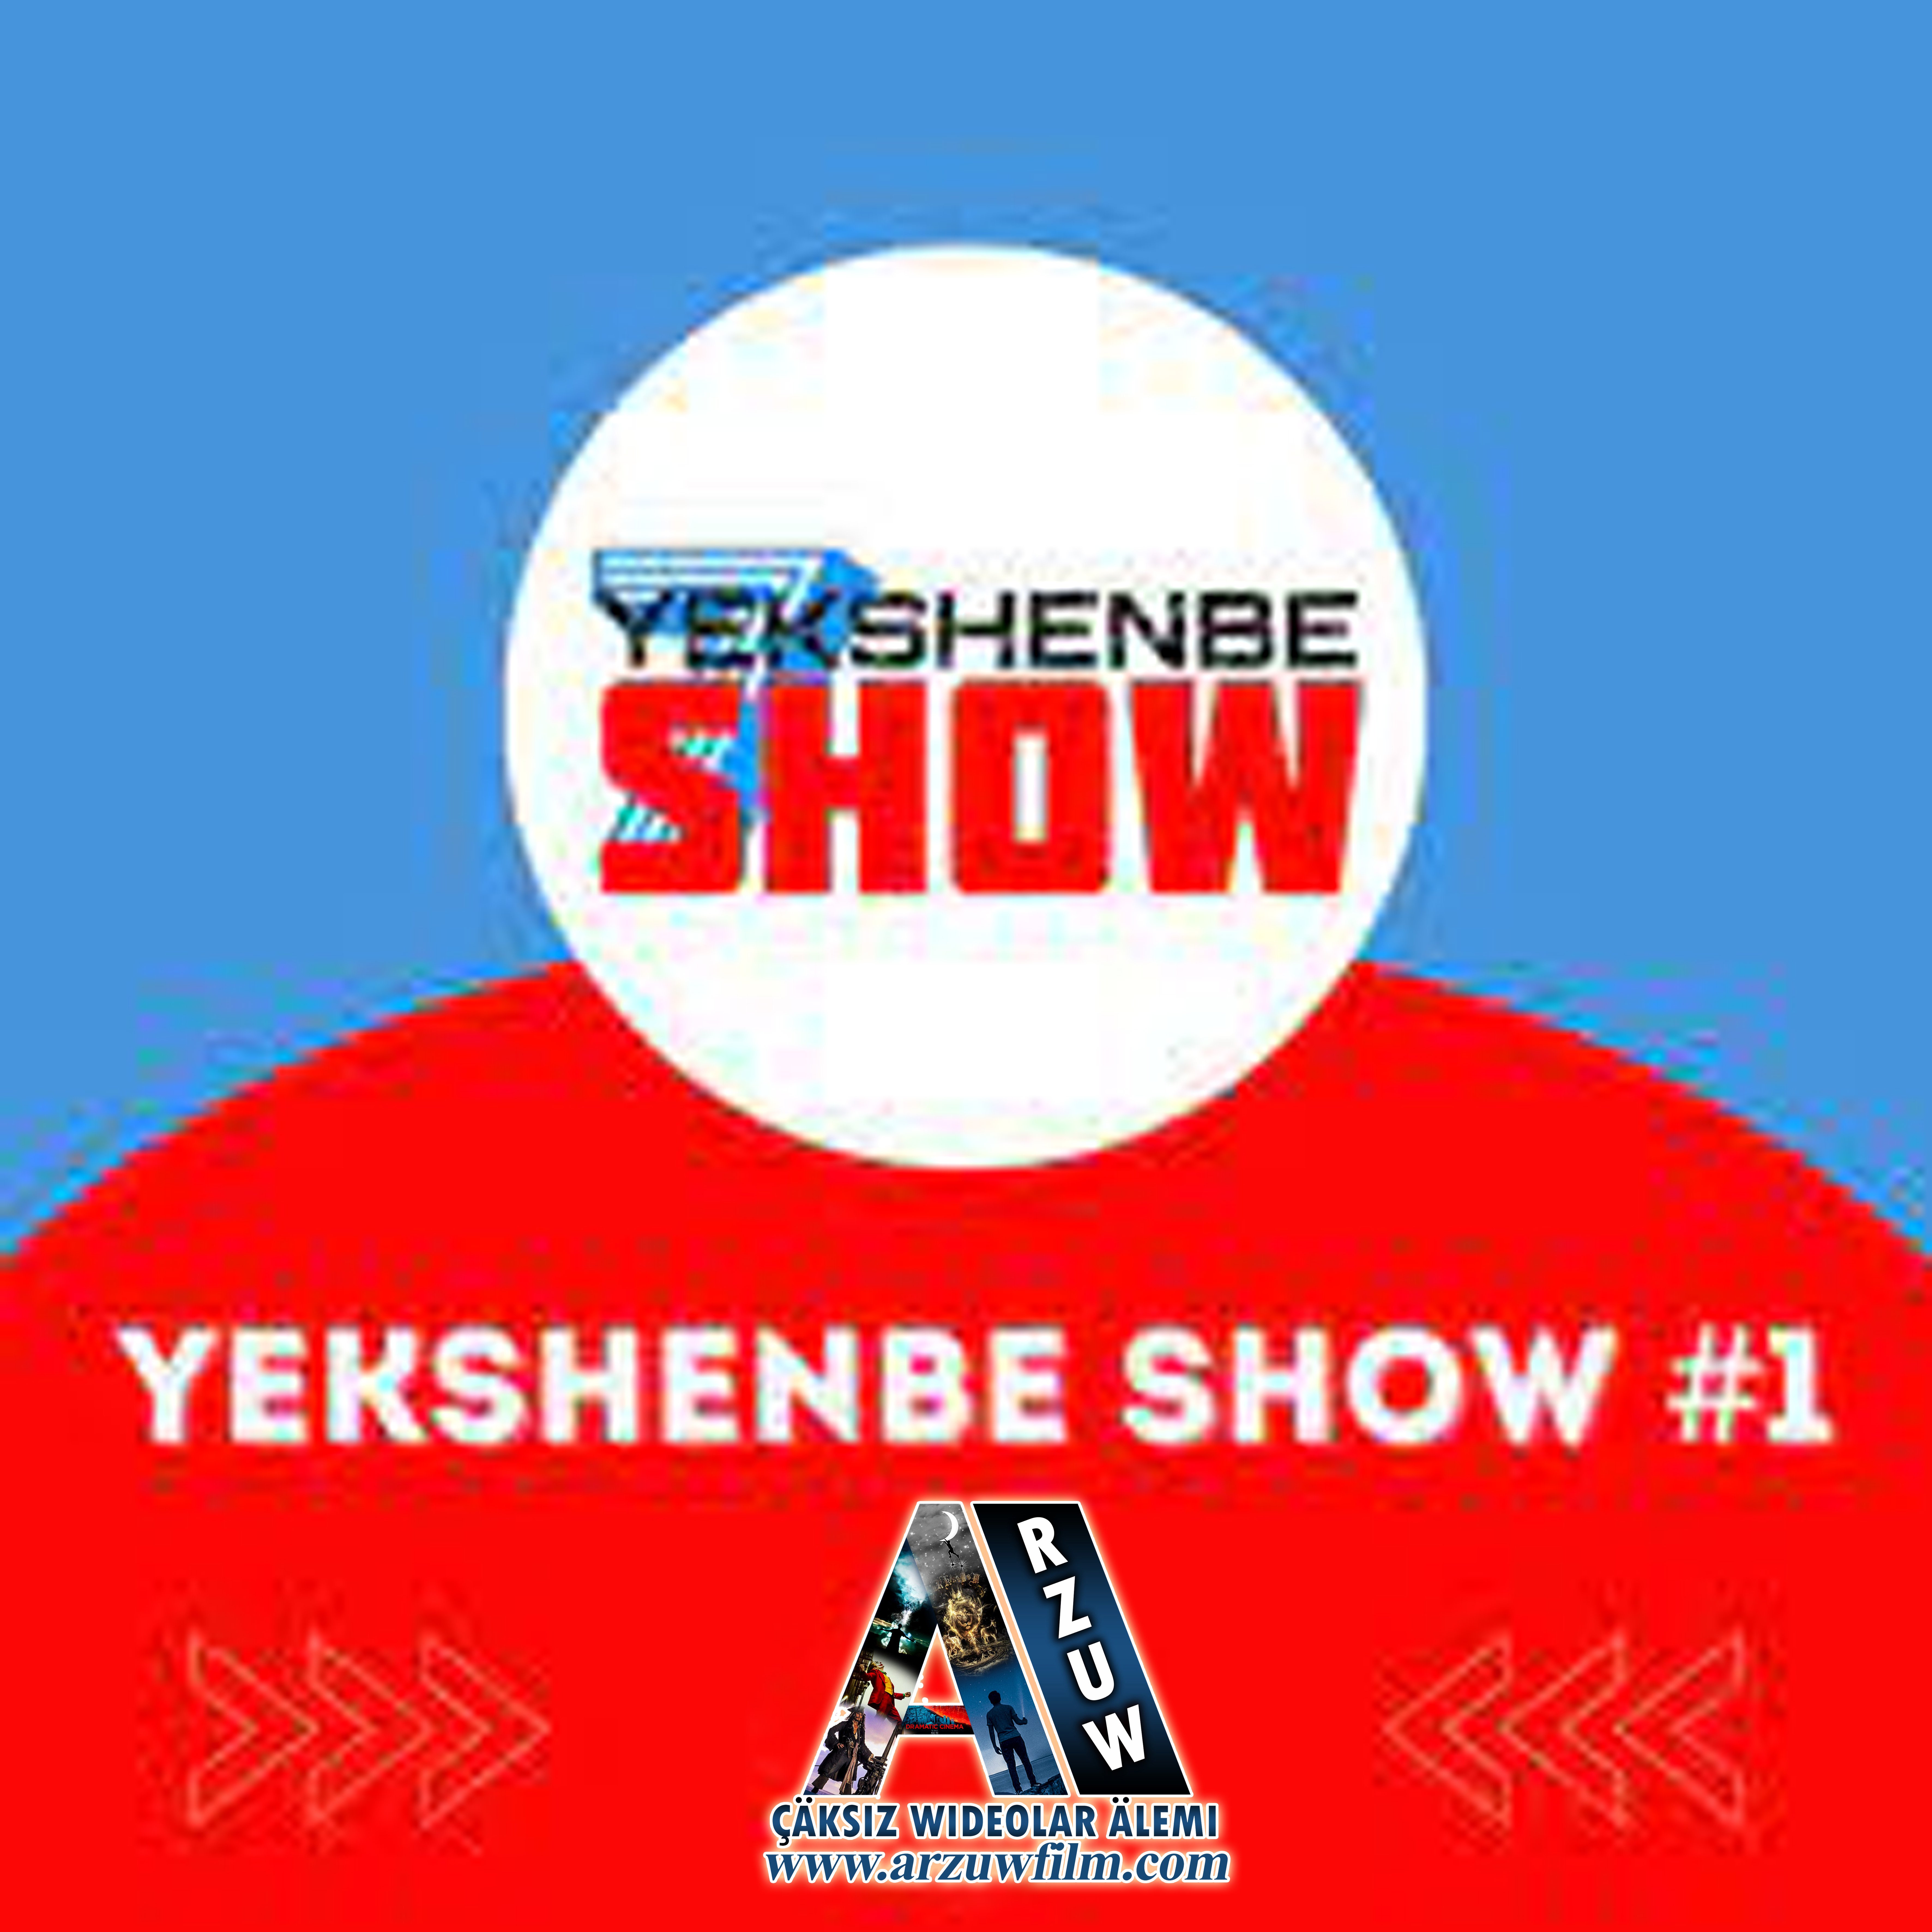 Yekshenbe show 2 bolum